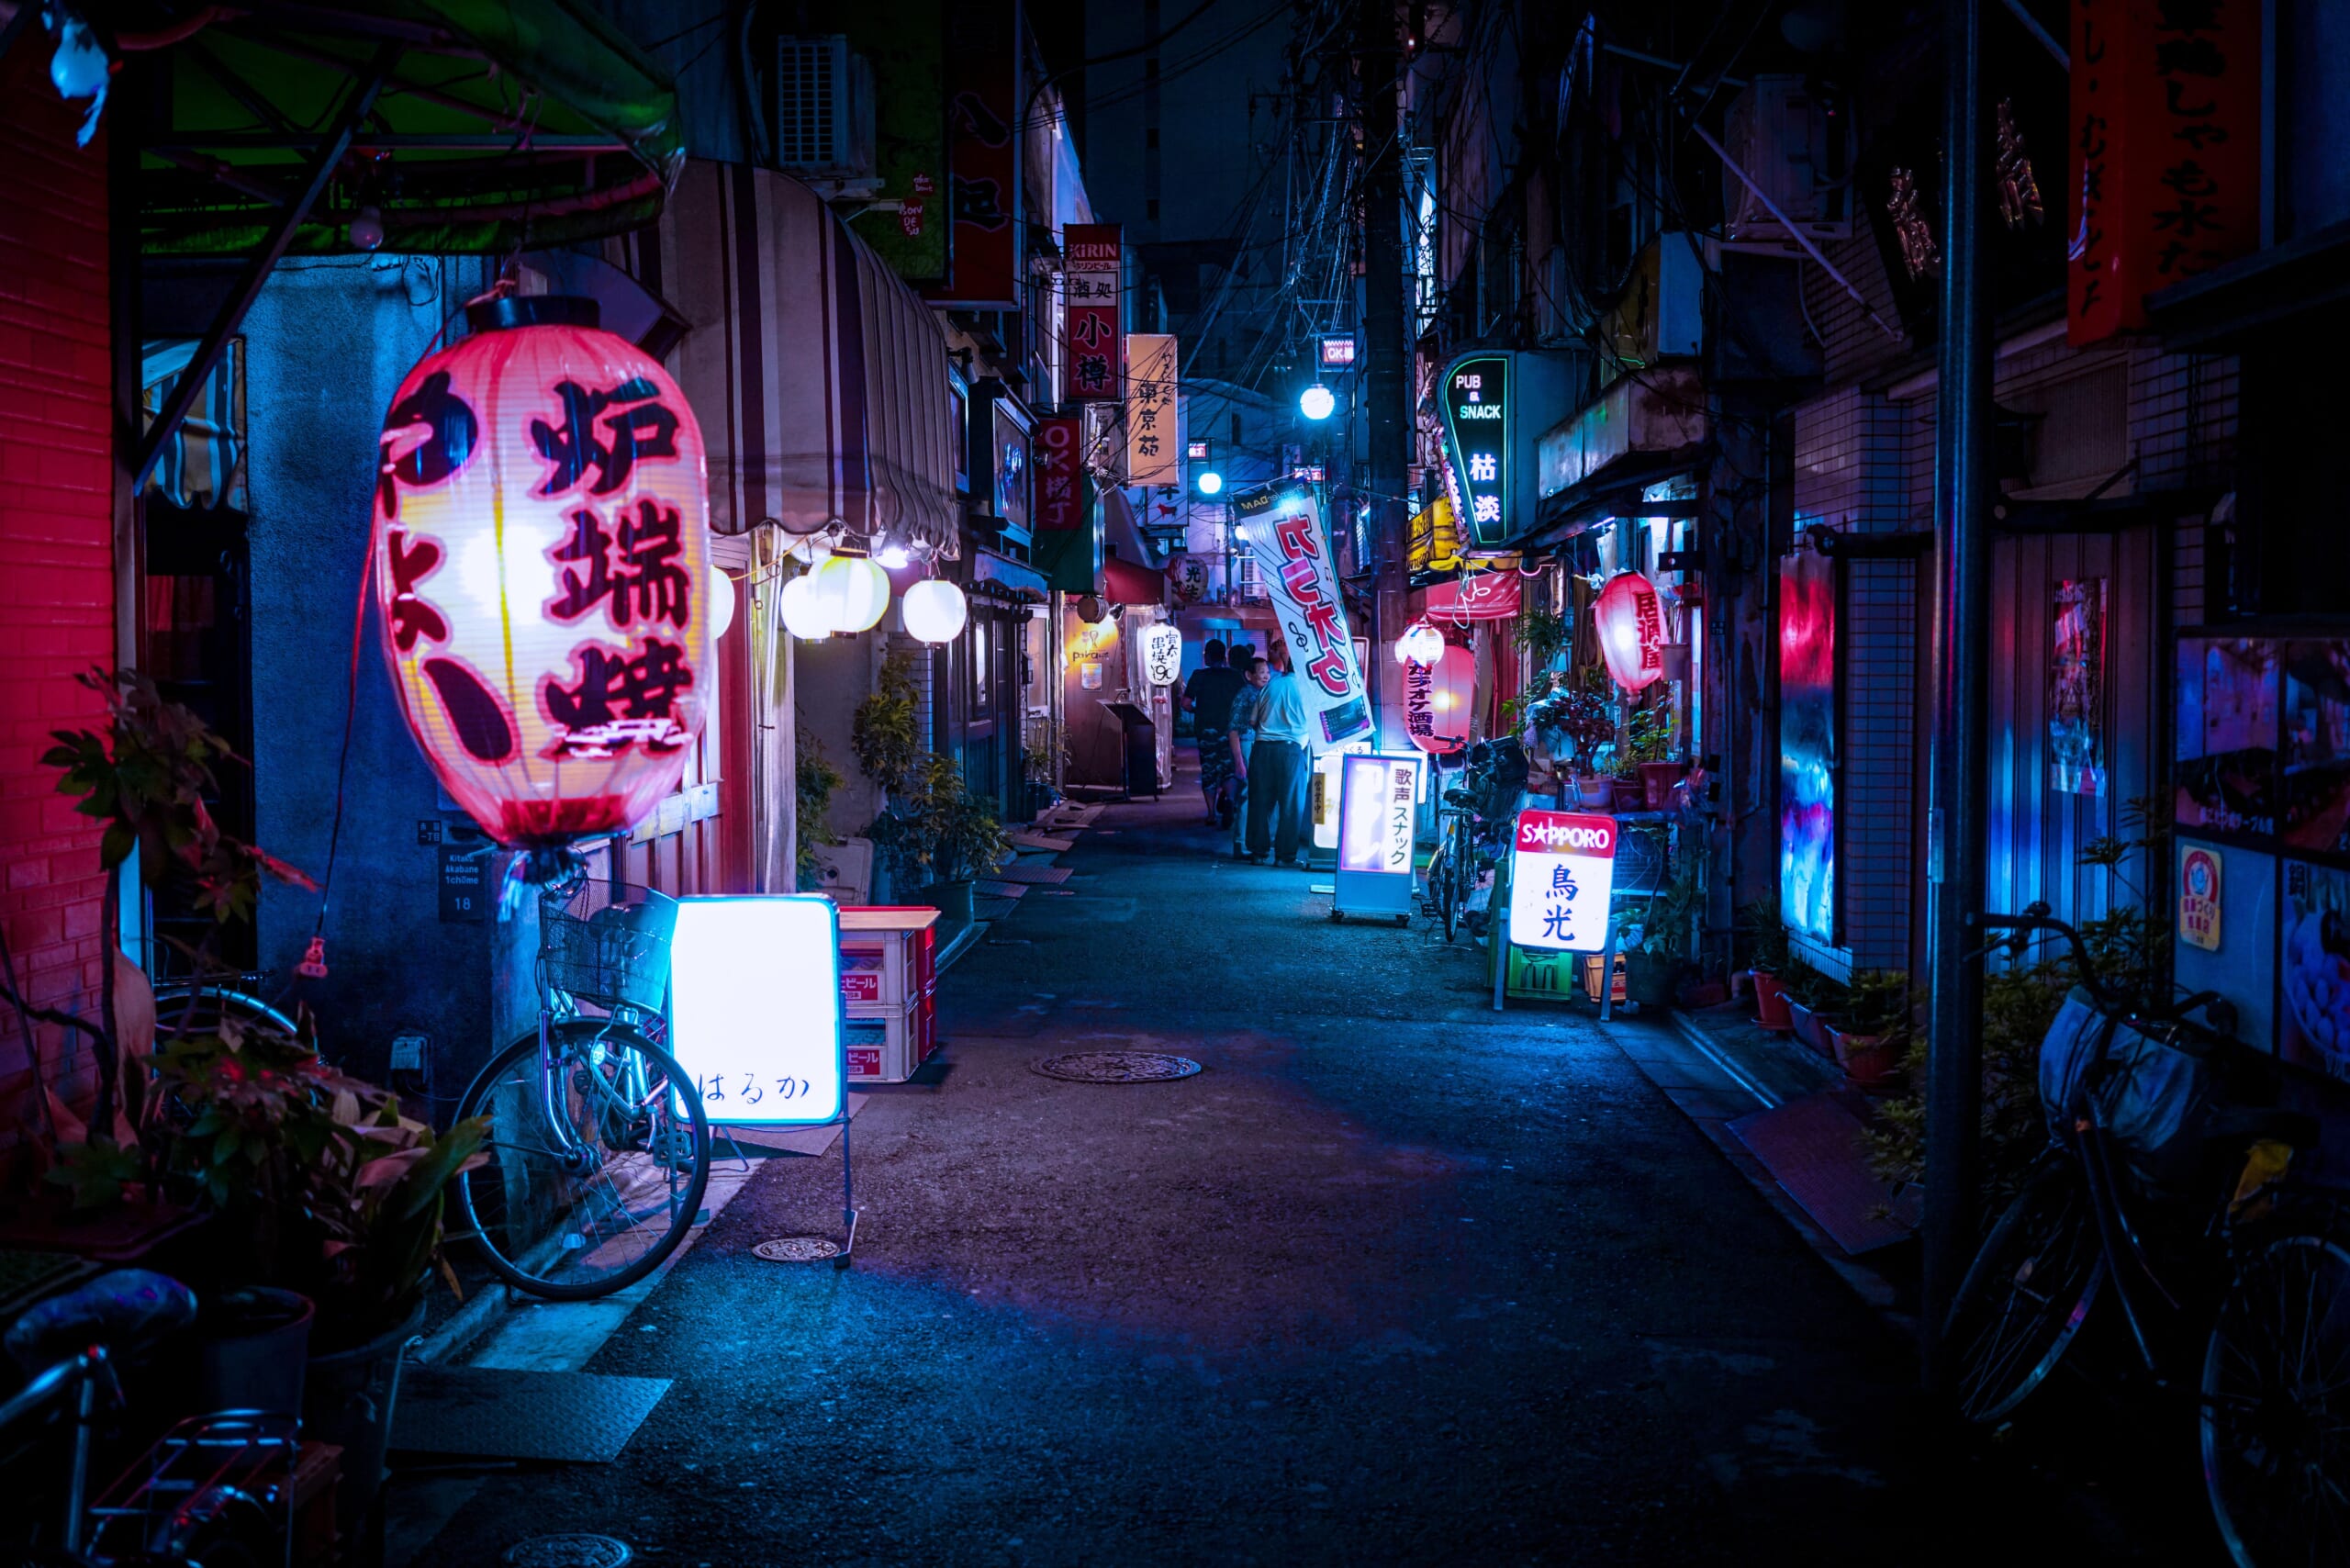 Nightlife in Japan